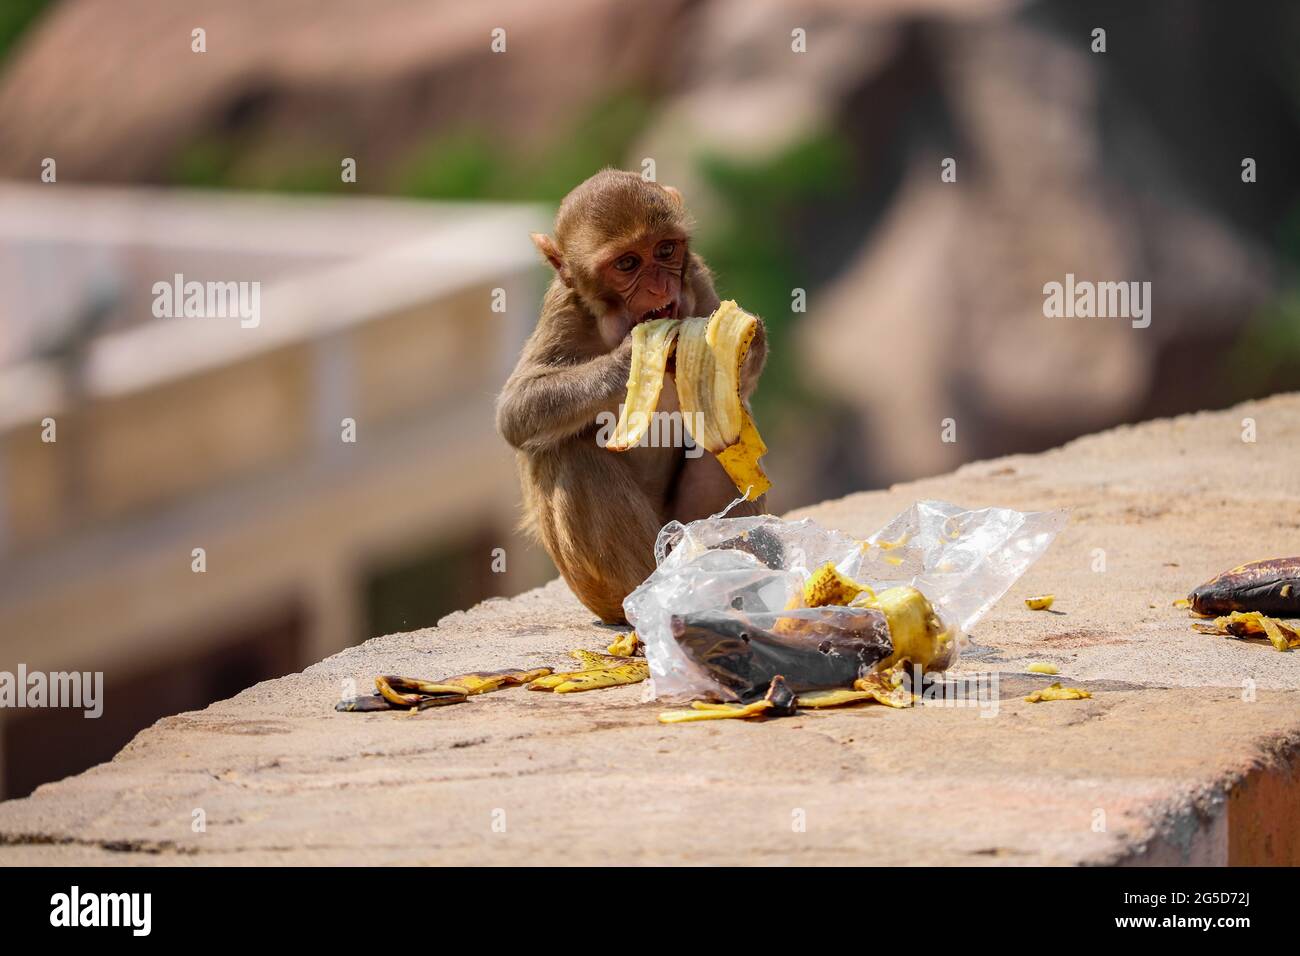 Baby Scimmia seduta sul muro, mangiare banana Foto Stock